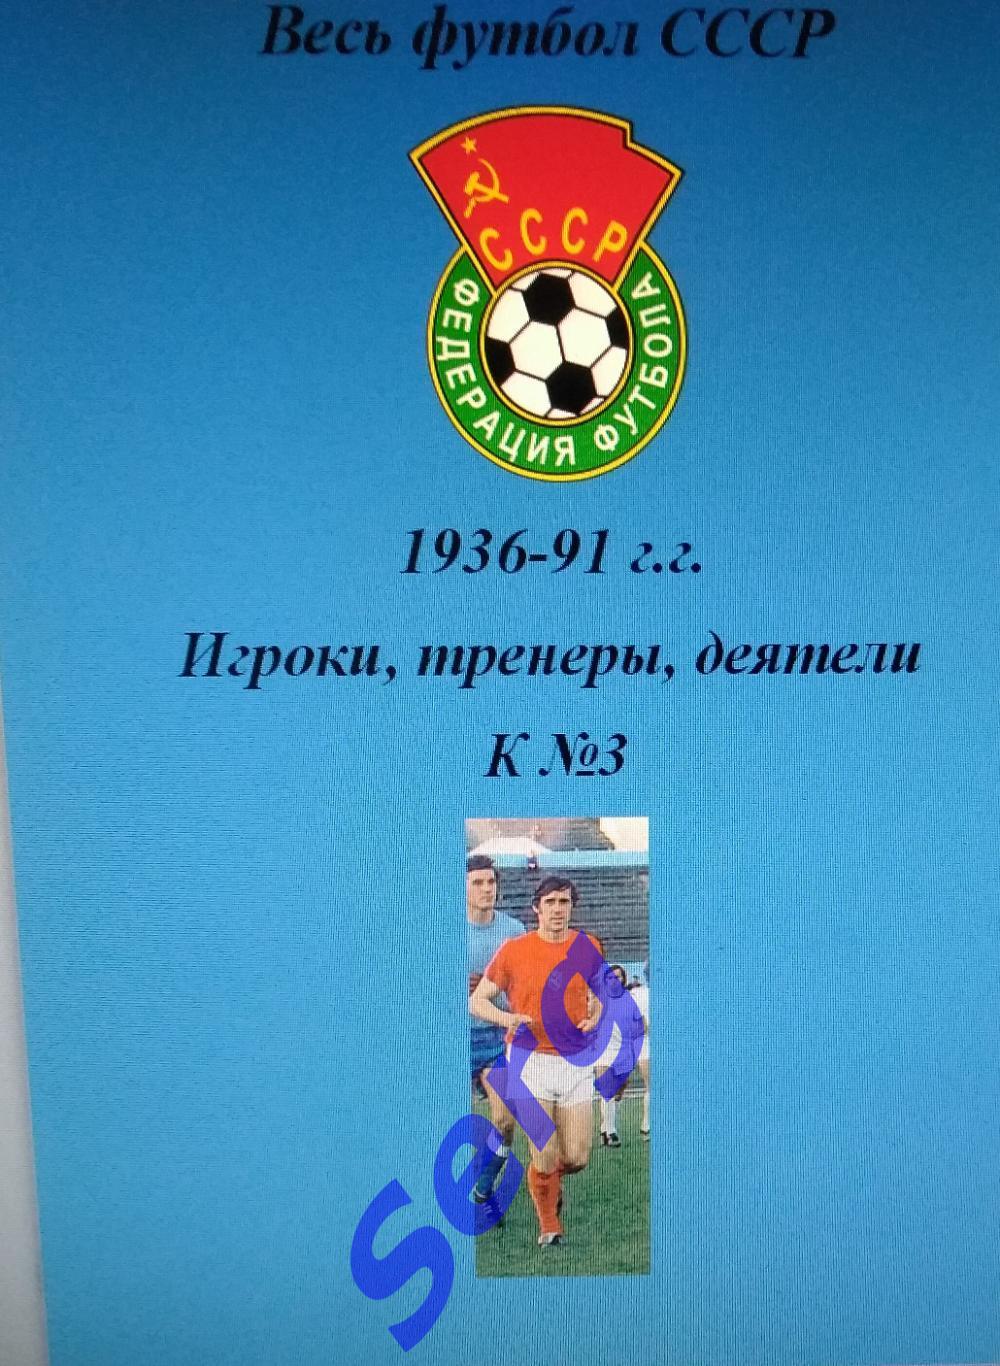 Весь футбол СССР. 1936-1991 г.г. Игроки, тренеры, деятели на букву К №3